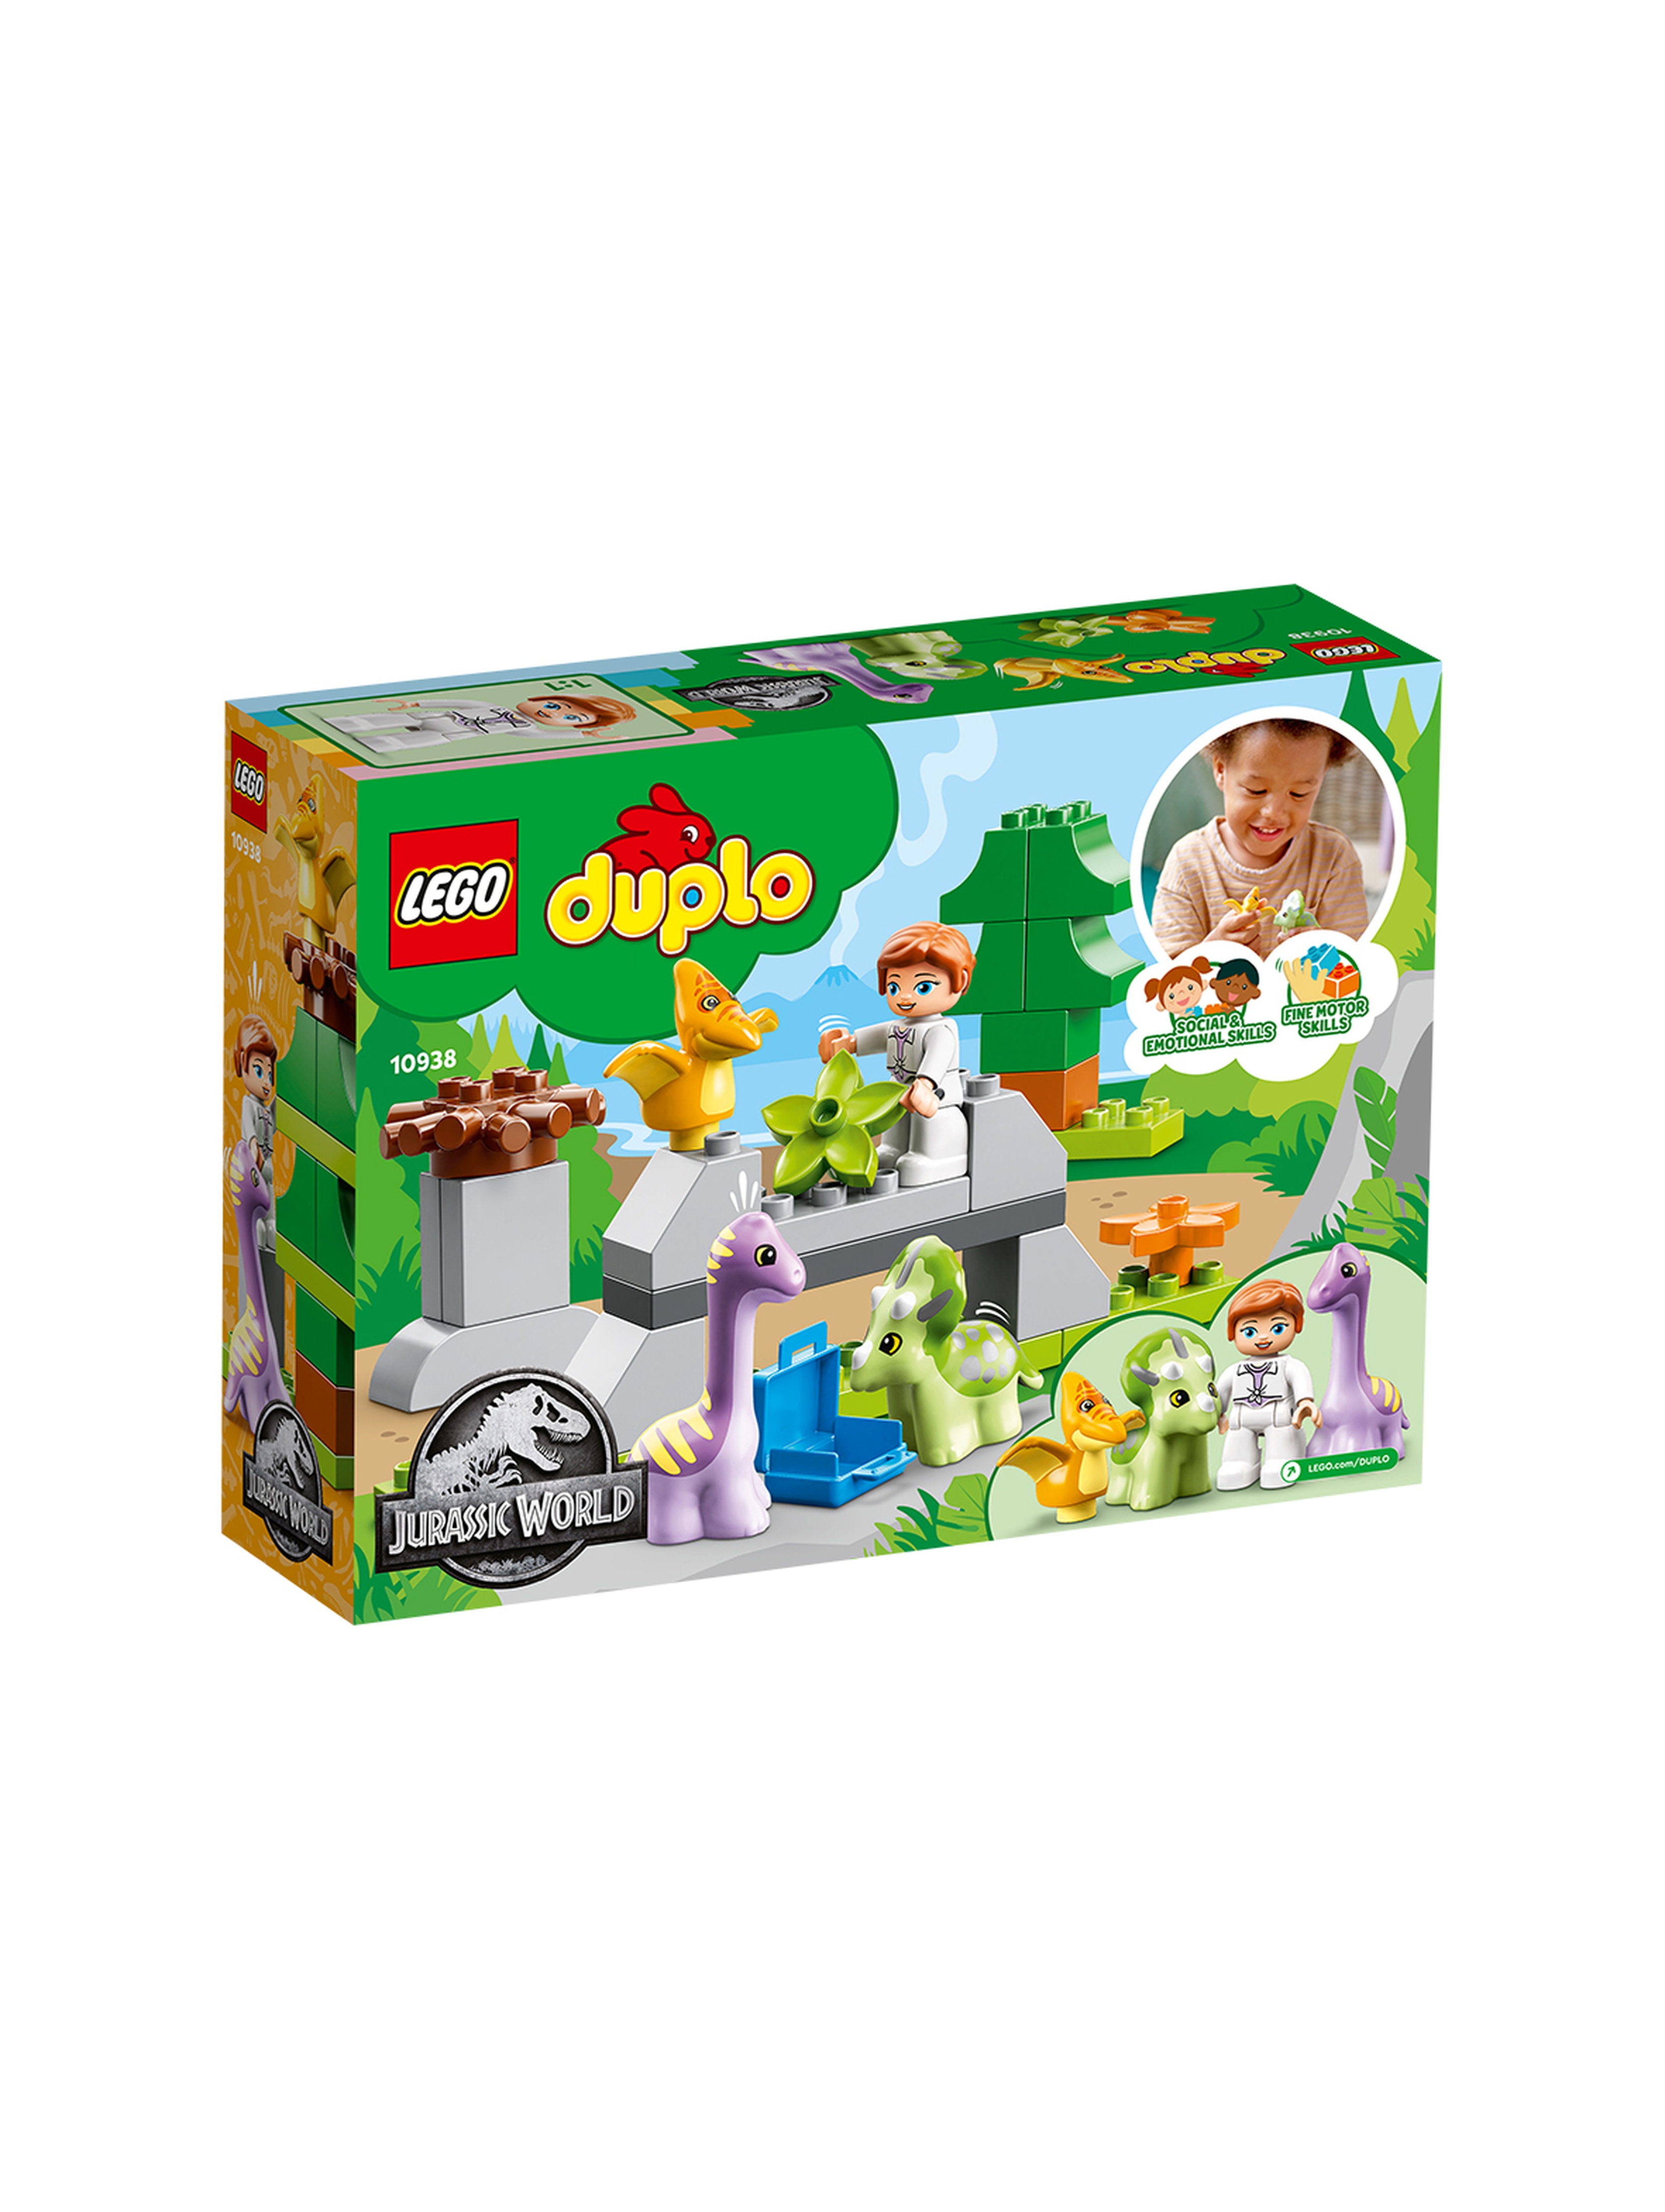 LEGO DUPLO - Dinozaurowa szkółka 10938 - 27 elementów, wiek 2+